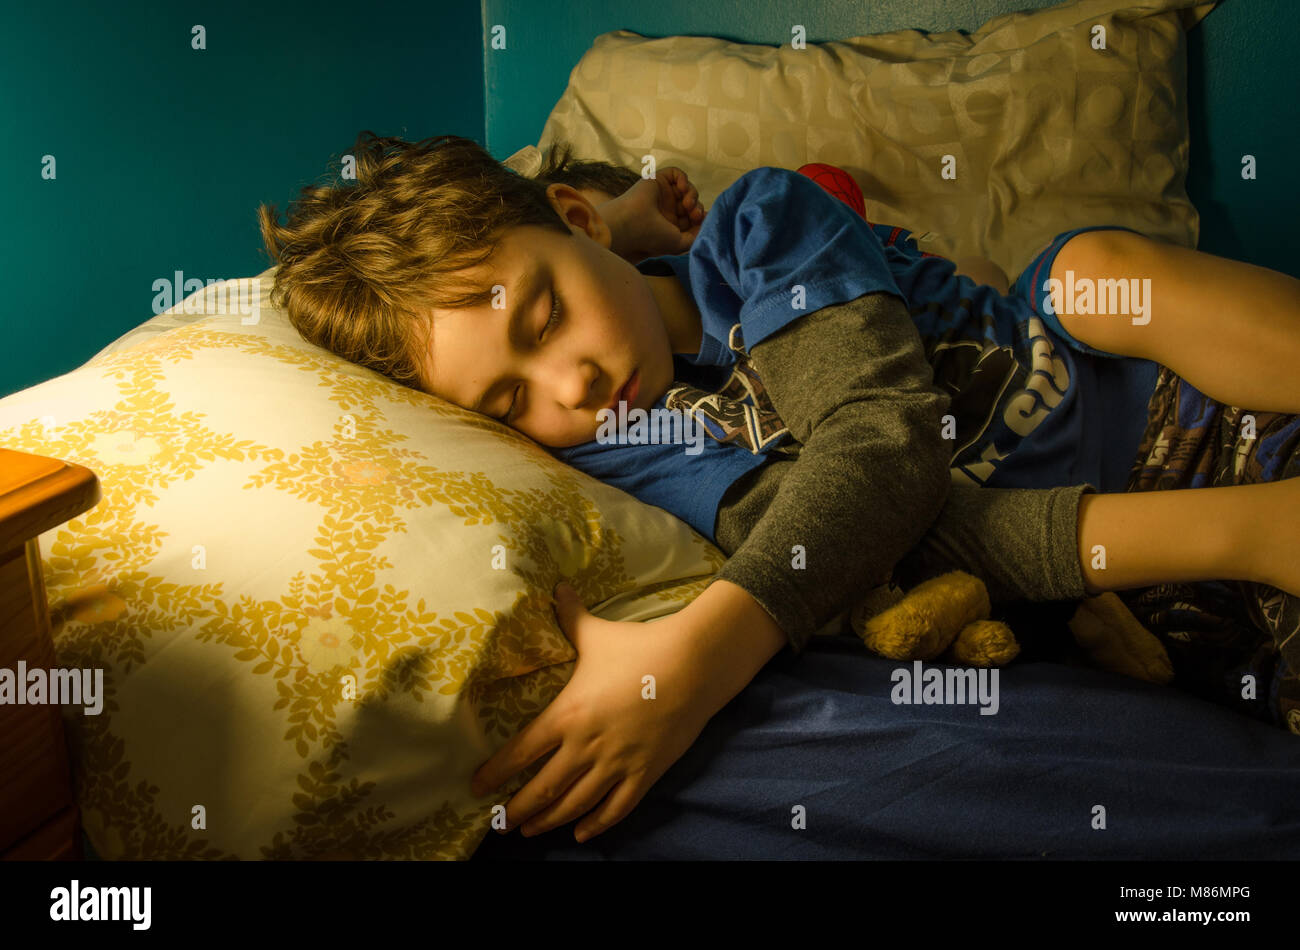 Deux jeunes frères endormis dans le même lit à la nuit. La scène est éclairée par la lueur d'une lampe de chevet. Banque D'Images